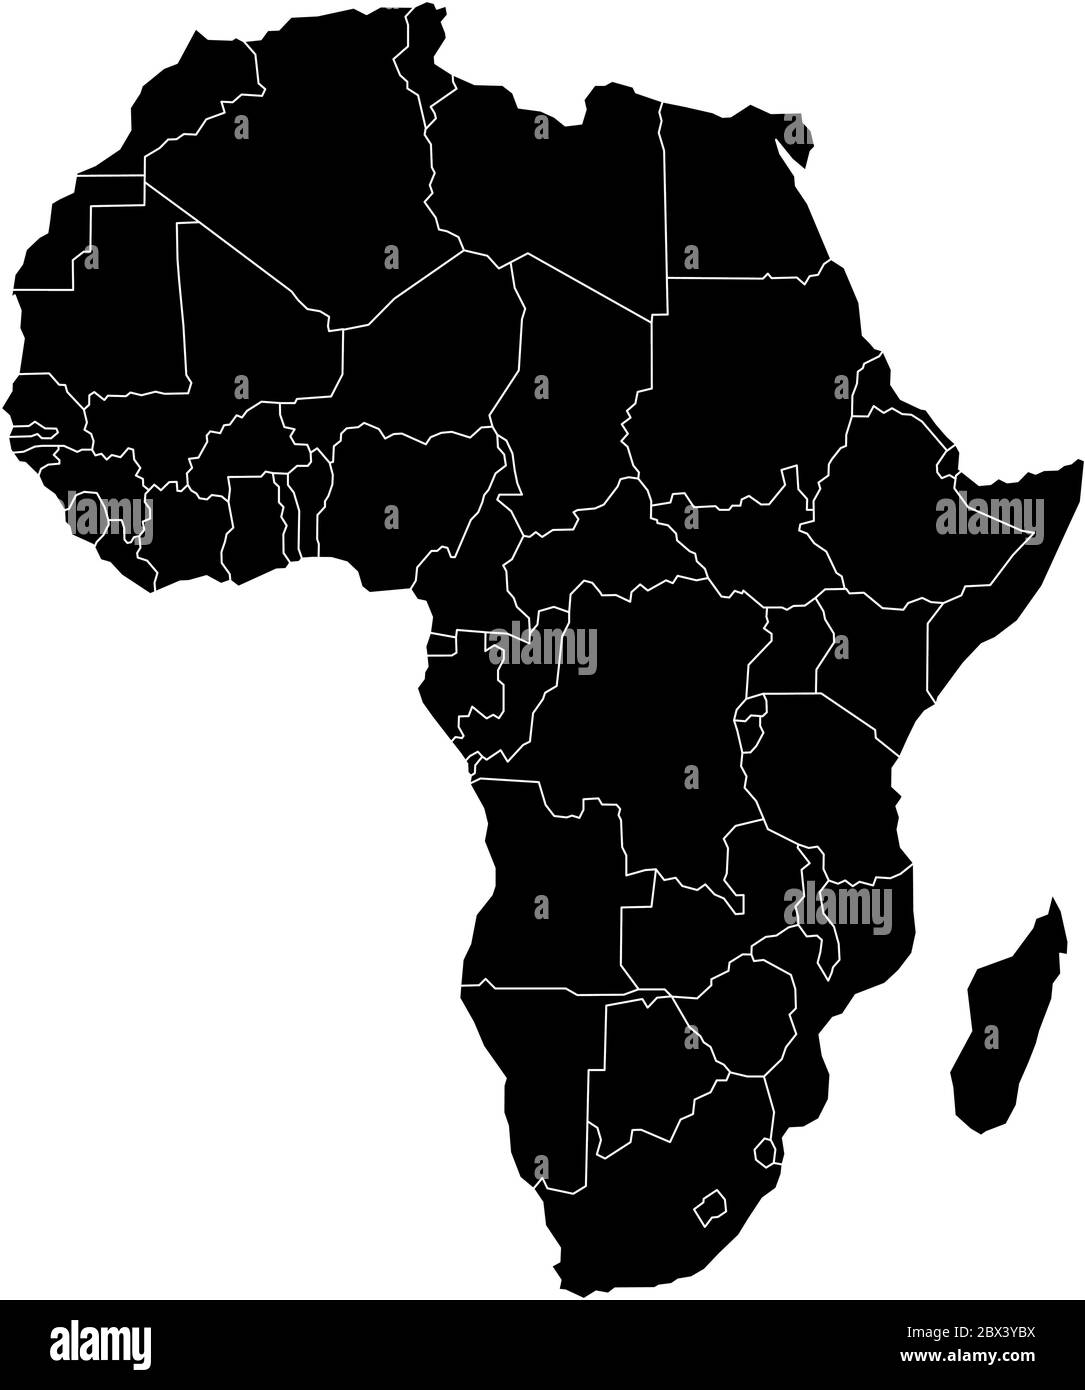 Semplice mappa piatta nera del continente africano con confini nazionali isolati su sfondo bianco. Illustrazione vettoriale. Illustrazione Vettoriale